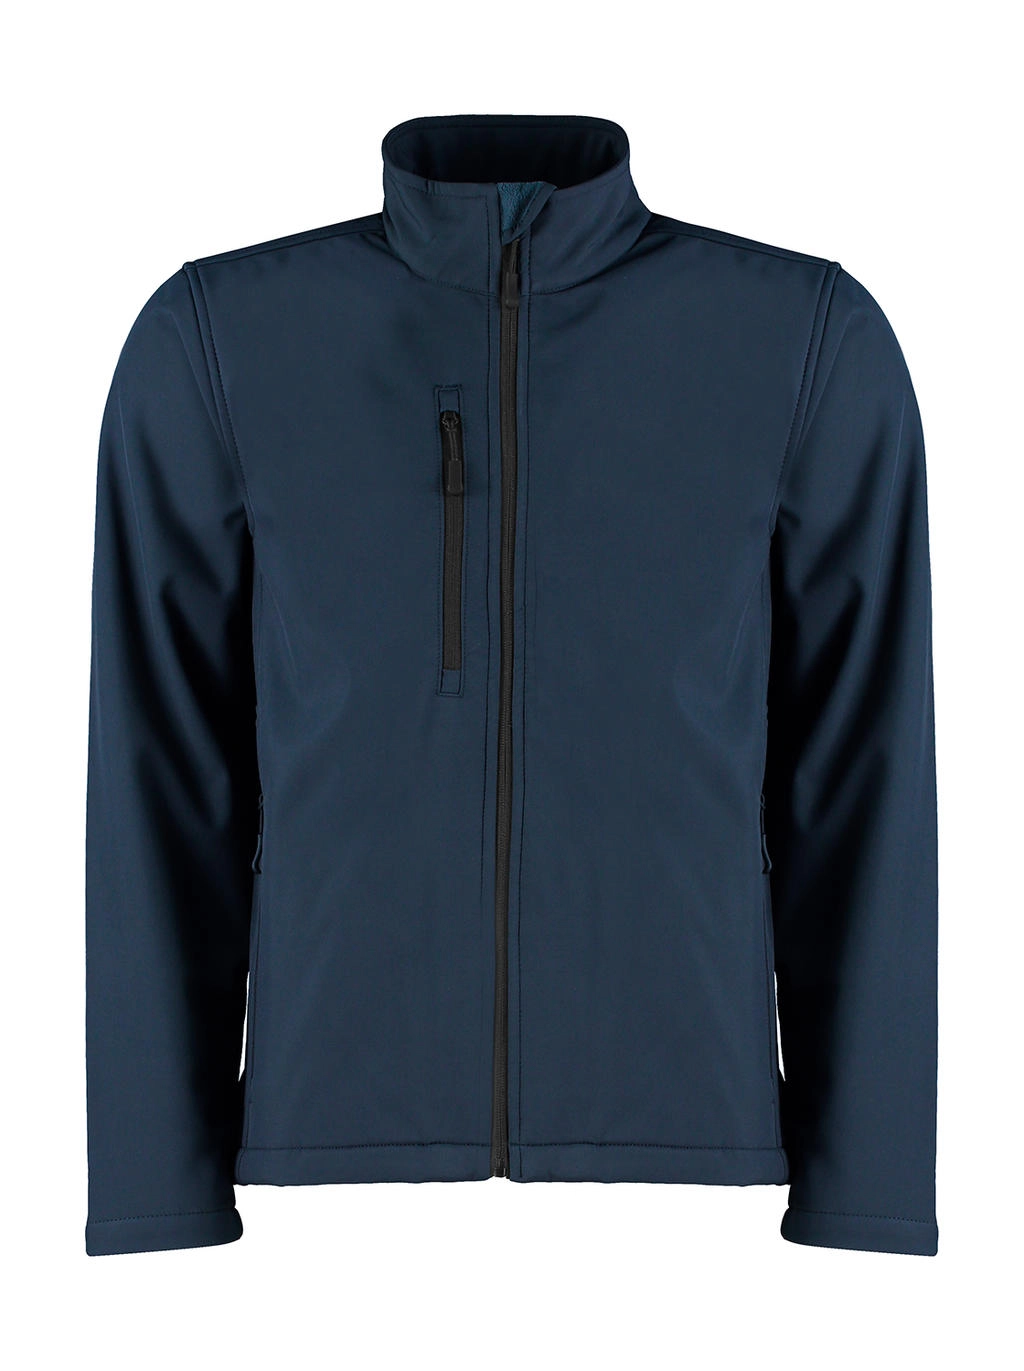 Regular Fit Soft Shell Jacket zum Besticken und Bedrucken in der Farbe Navy mit Ihren Logo, Schriftzug oder Motiv.